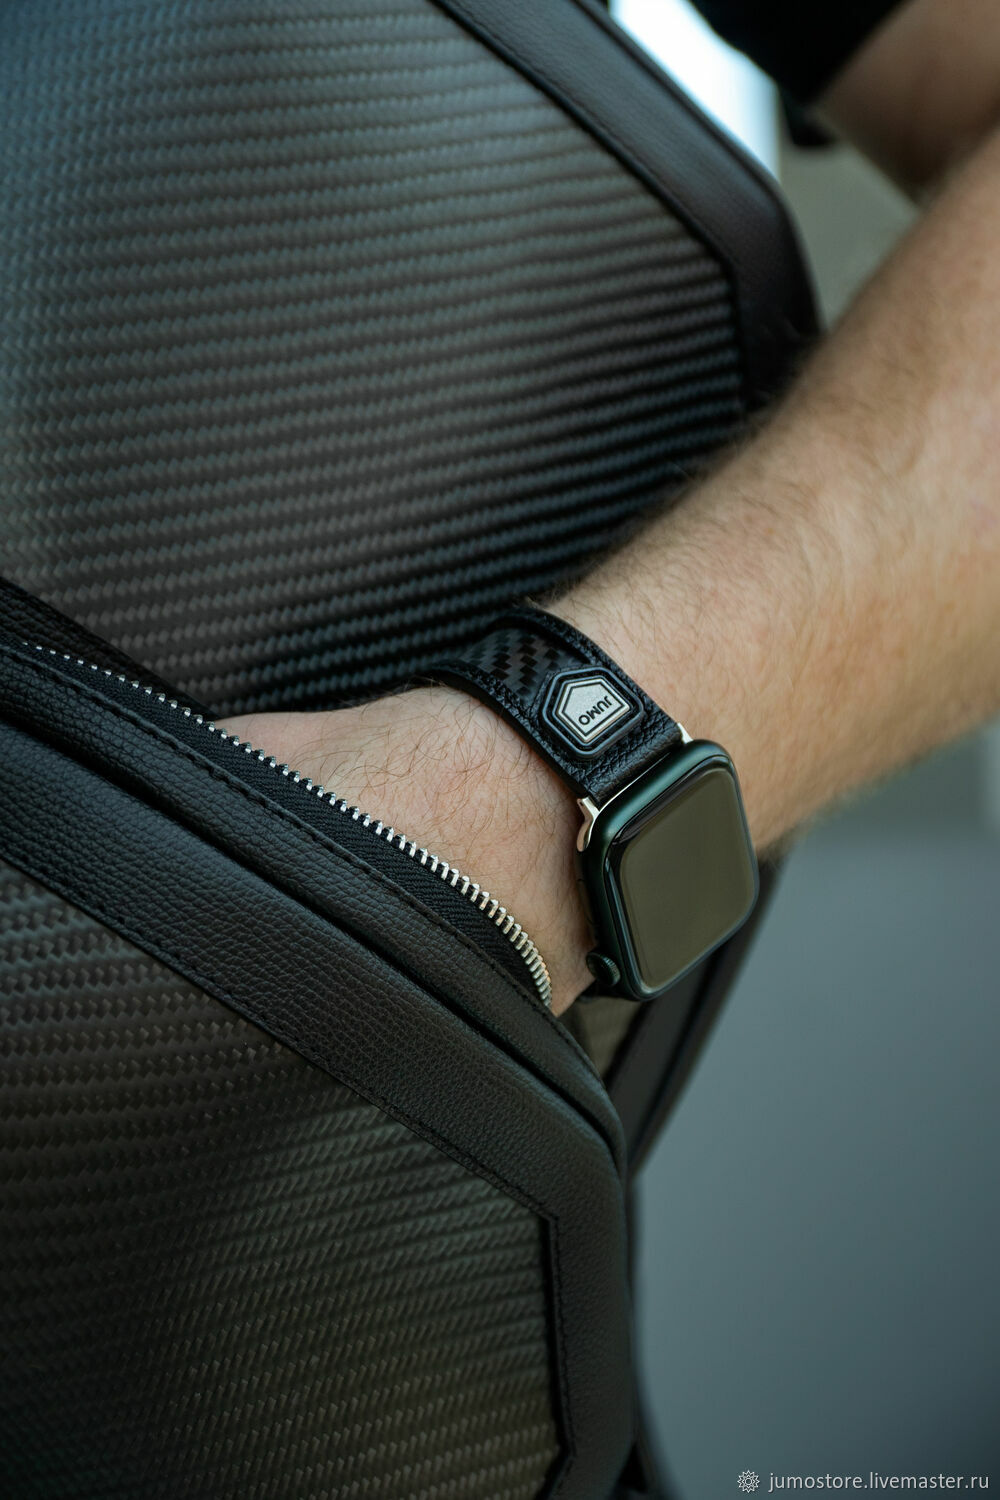  Ремешок для Apple Watch из кожи ручной работы, Ремешок для часов, Краснодар,  Фото №1